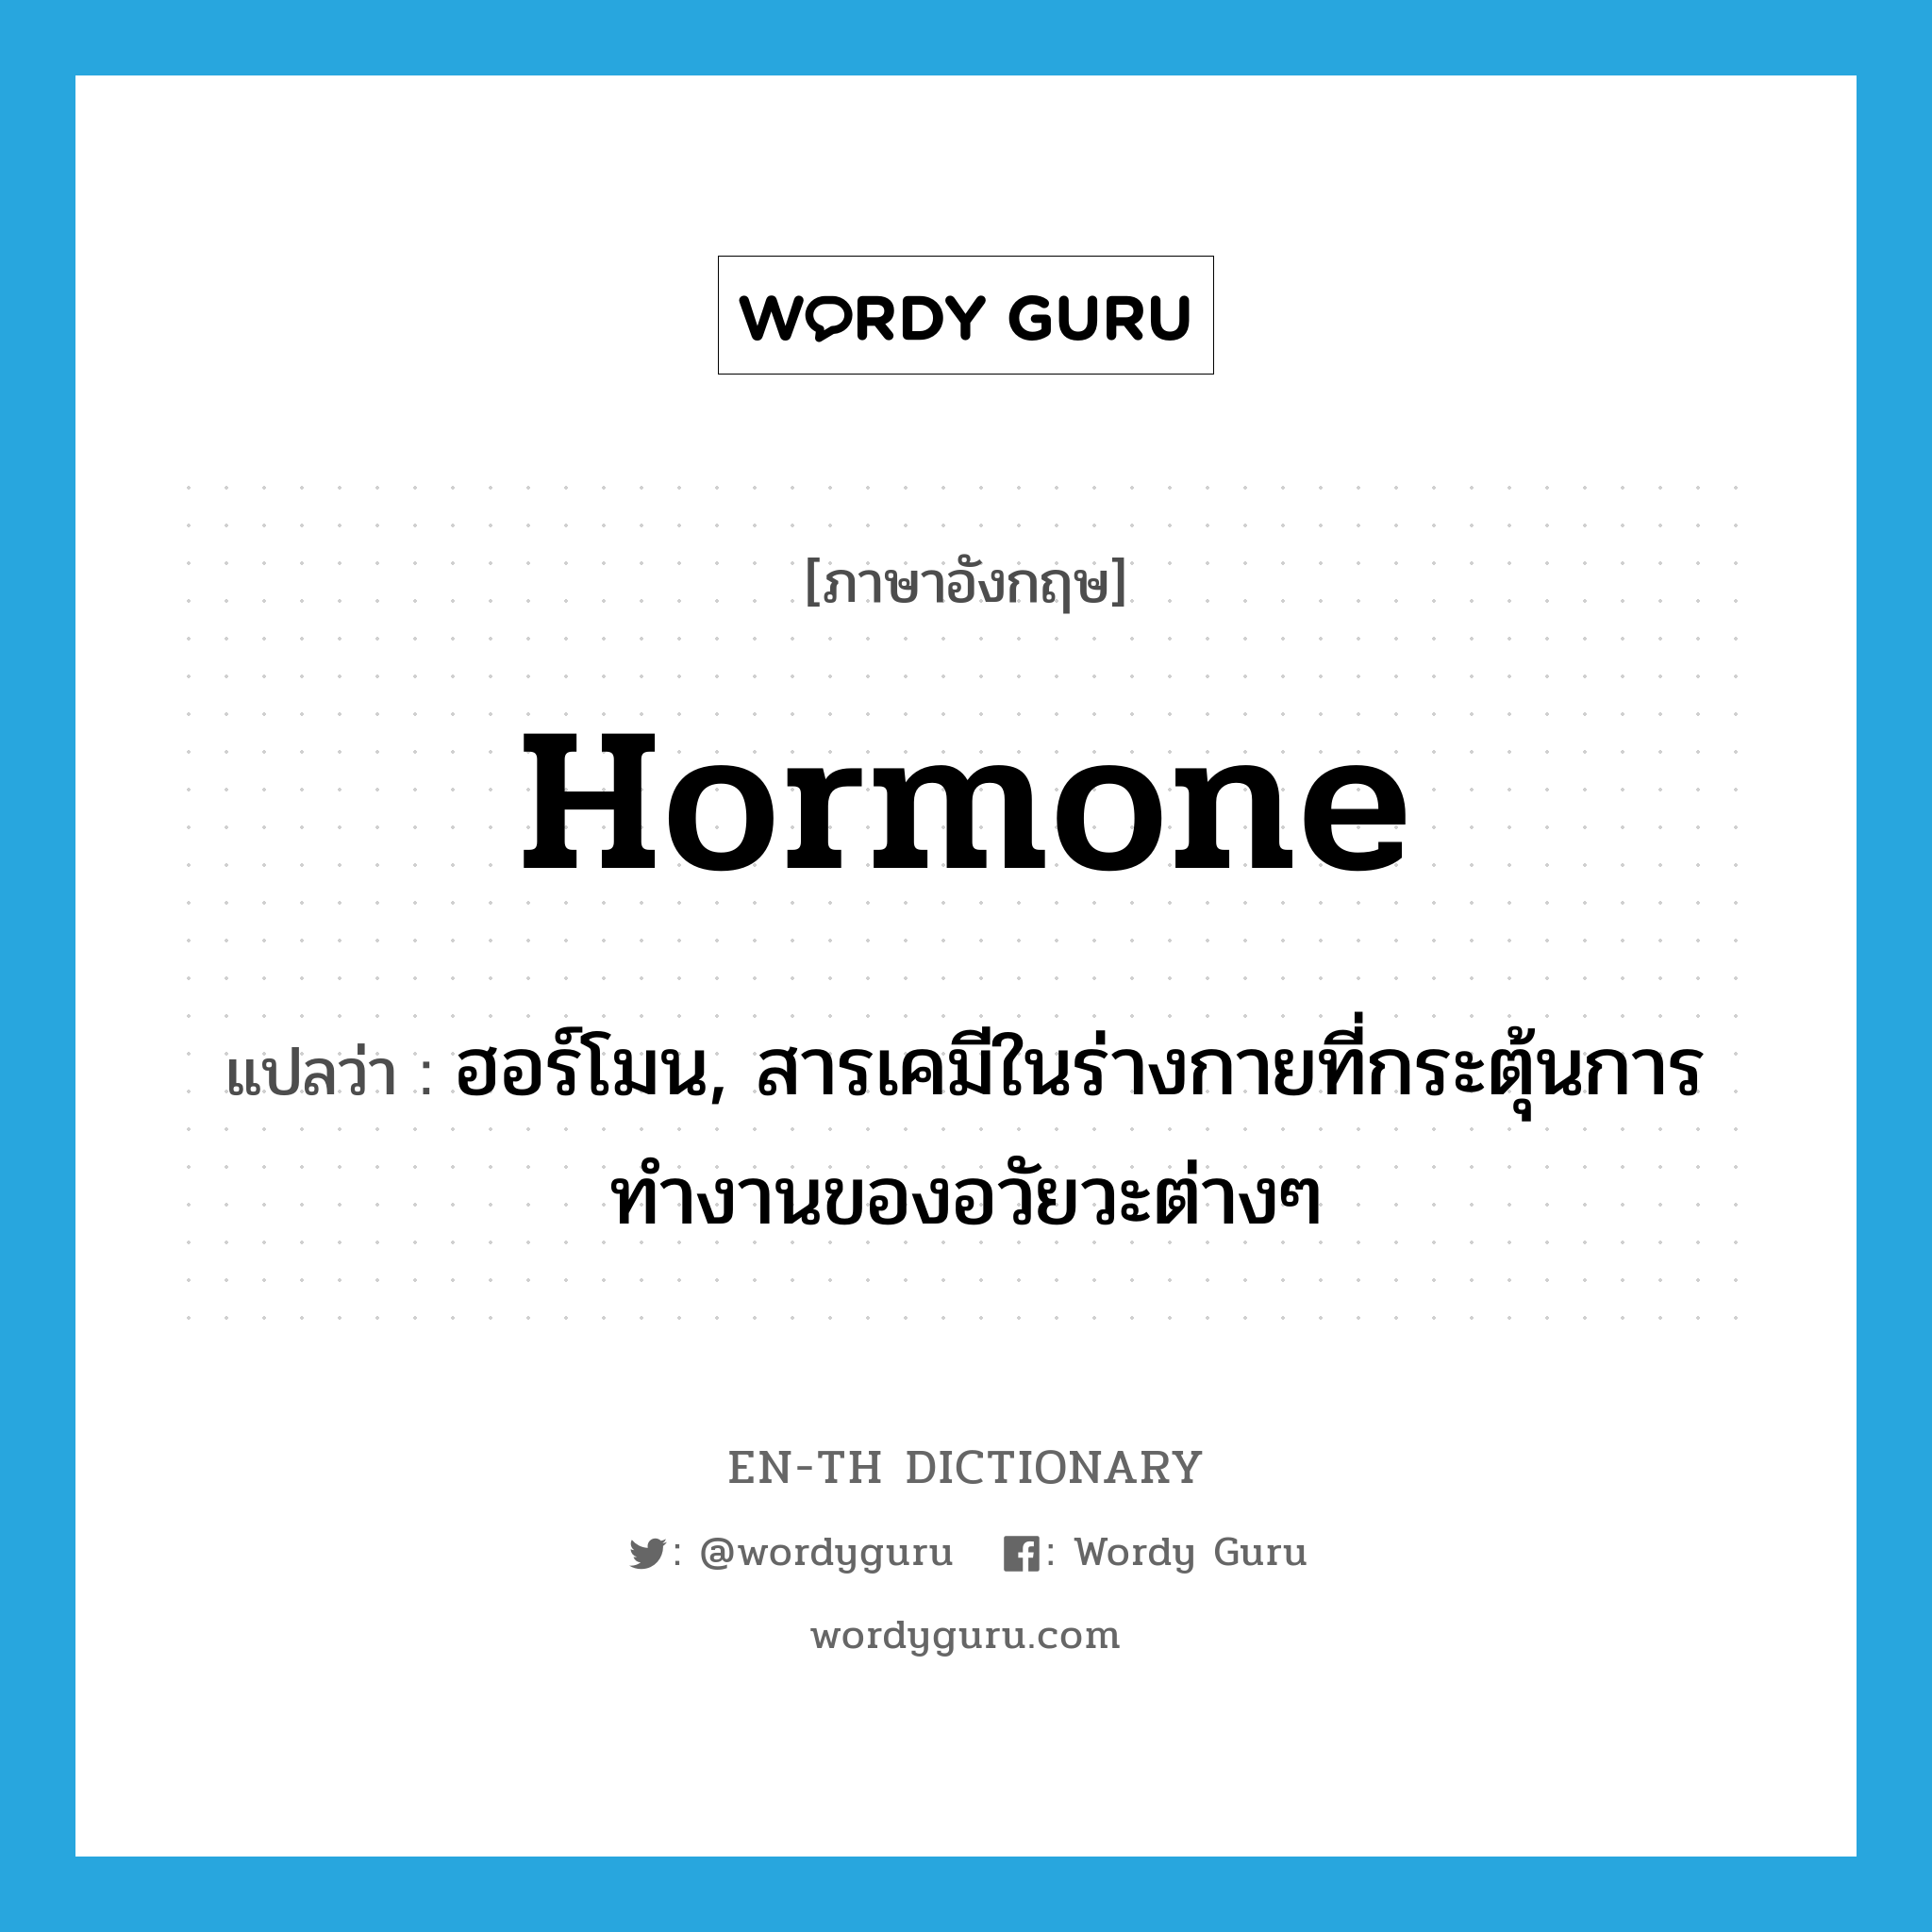 ฮอร์โมน, สารเคมีในร่างกายที่กระตุ้นการทำงานของอวัยวะต่างๆ ภาษาอังกฤษ?, คำศัพท์ภาษาอังกฤษ ฮอร์โมน, สารเคมีในร่างกายที่กระตุ้นการทำงานของอวัยวะต่างๆ แปลว่า hormone ประเภท N หมวด N